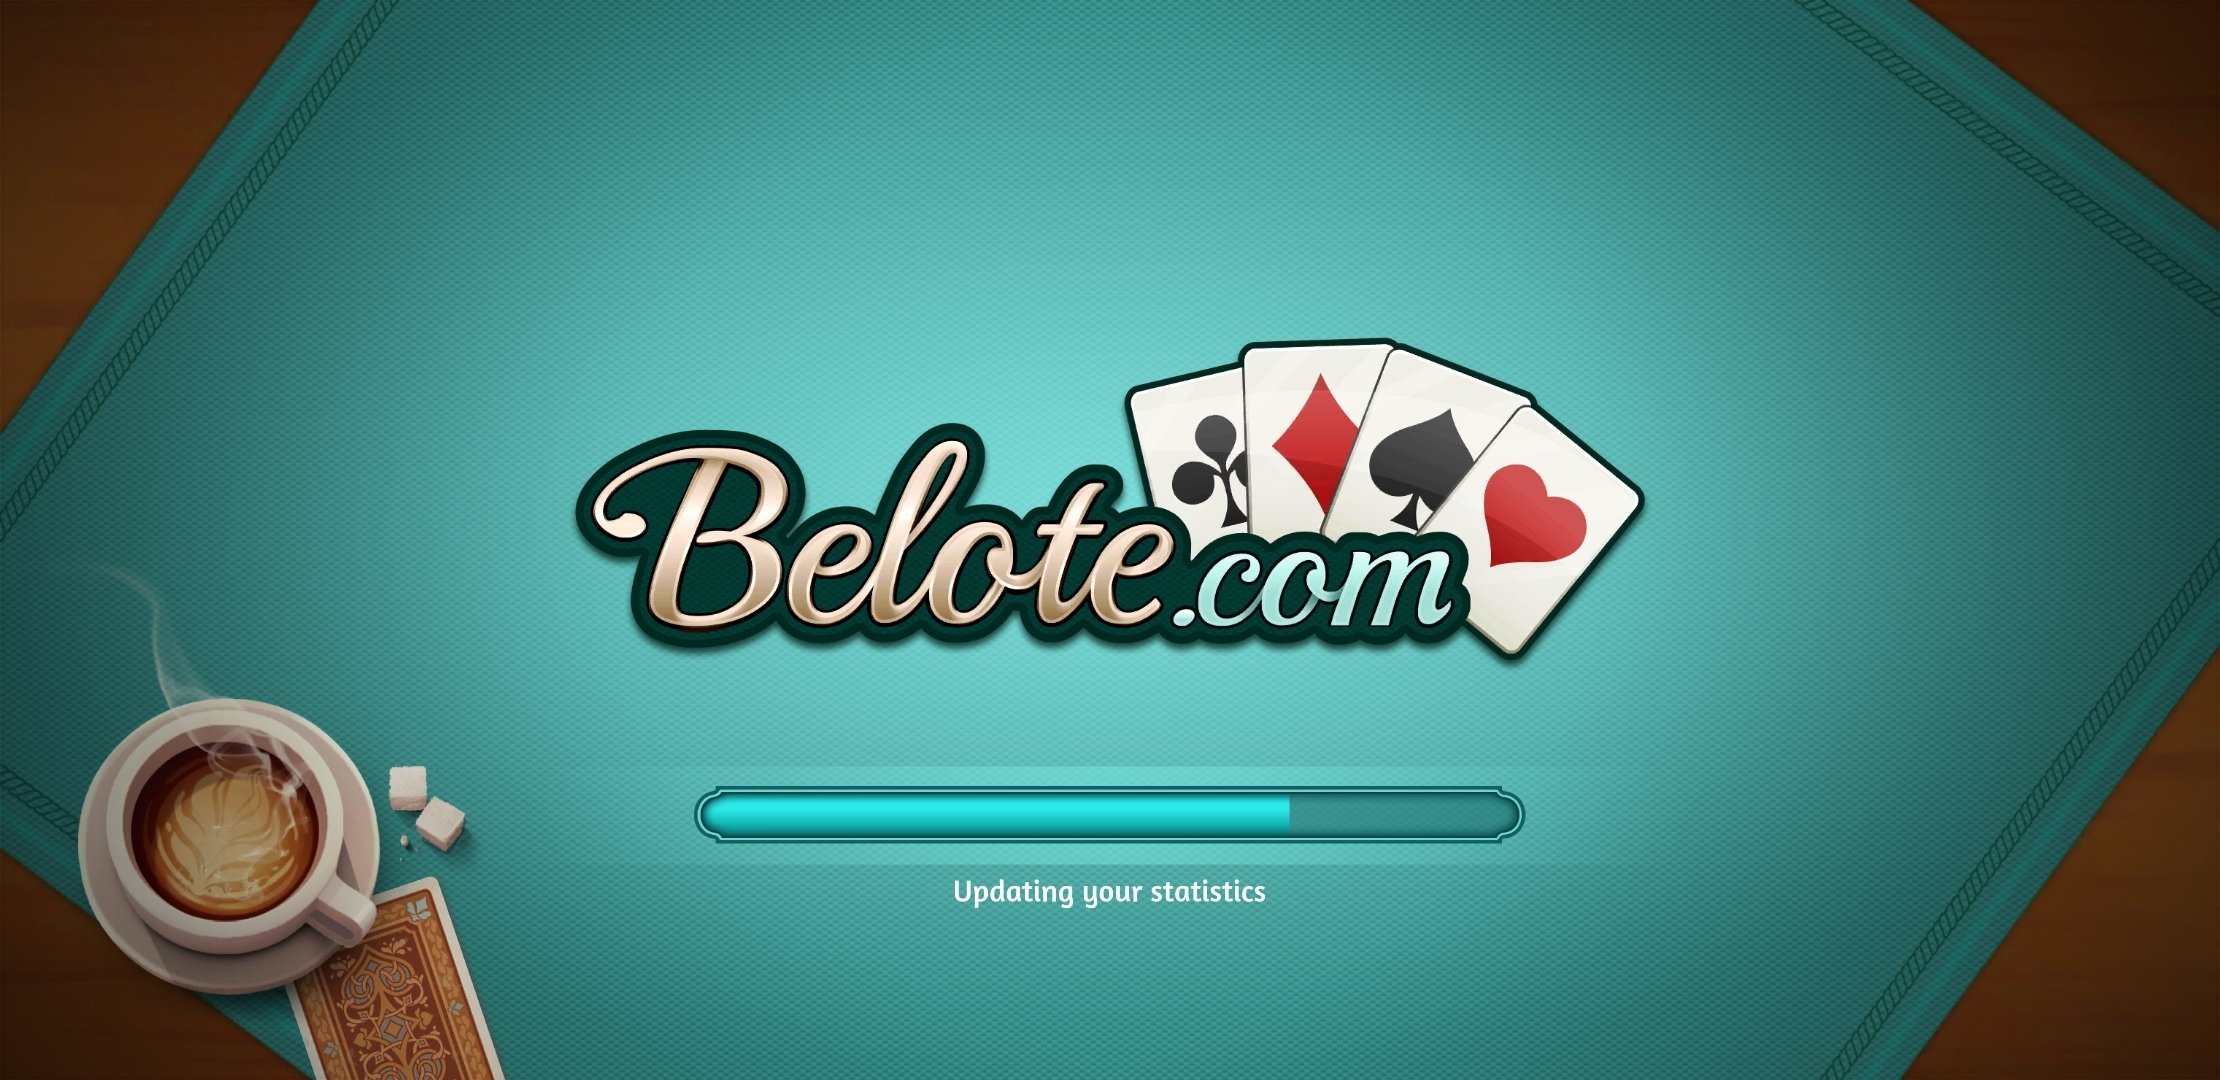 belote.com 